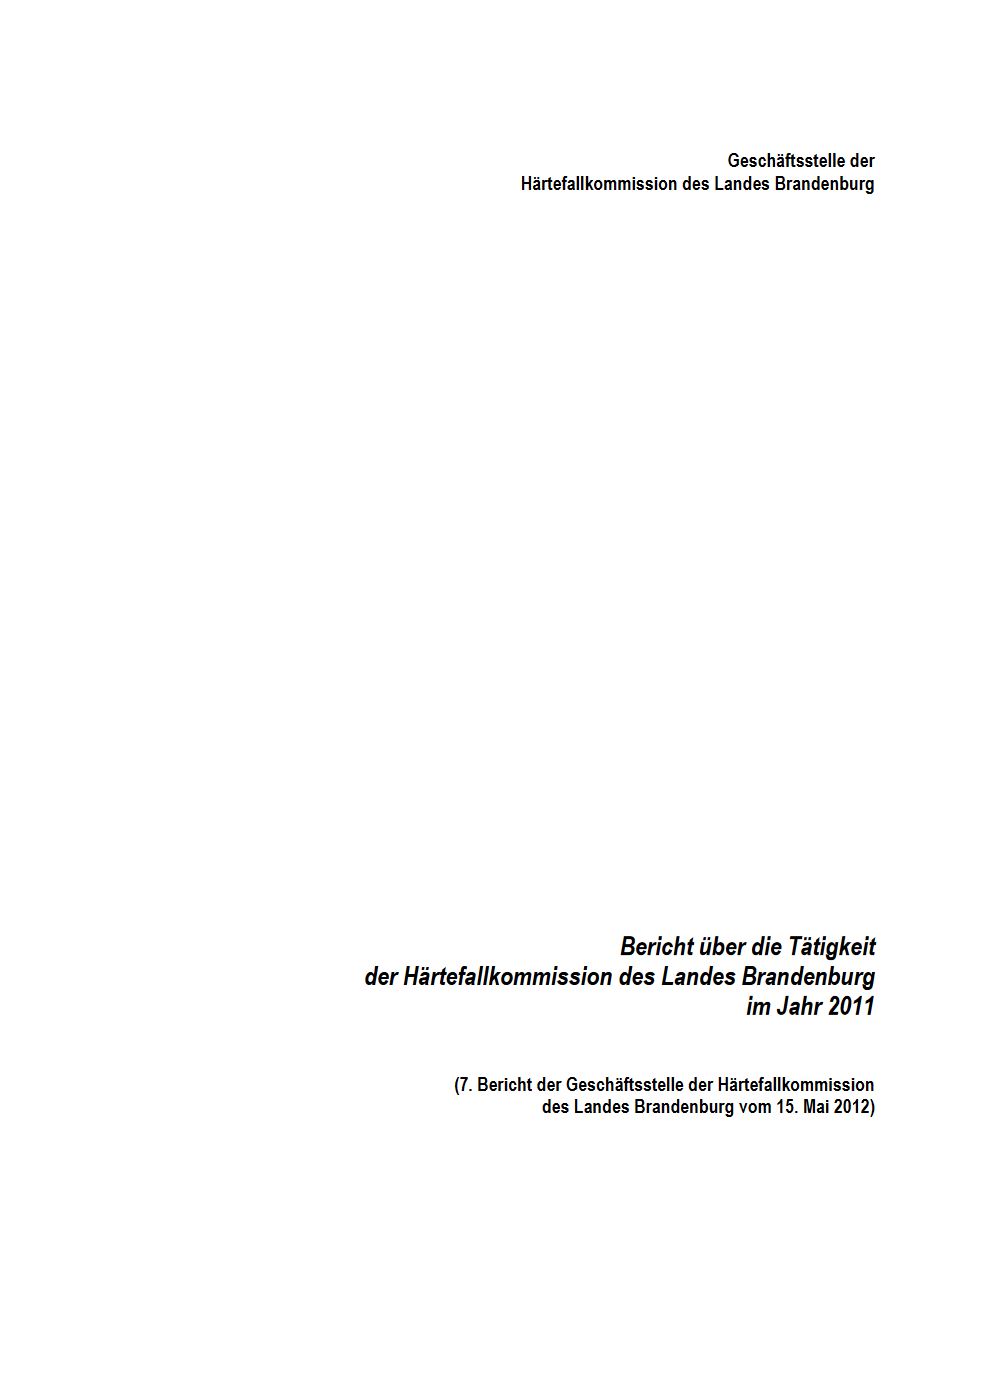 Bild vergrößern (Bild: Härtefallkommission Tätigkeitsbericht 2011)